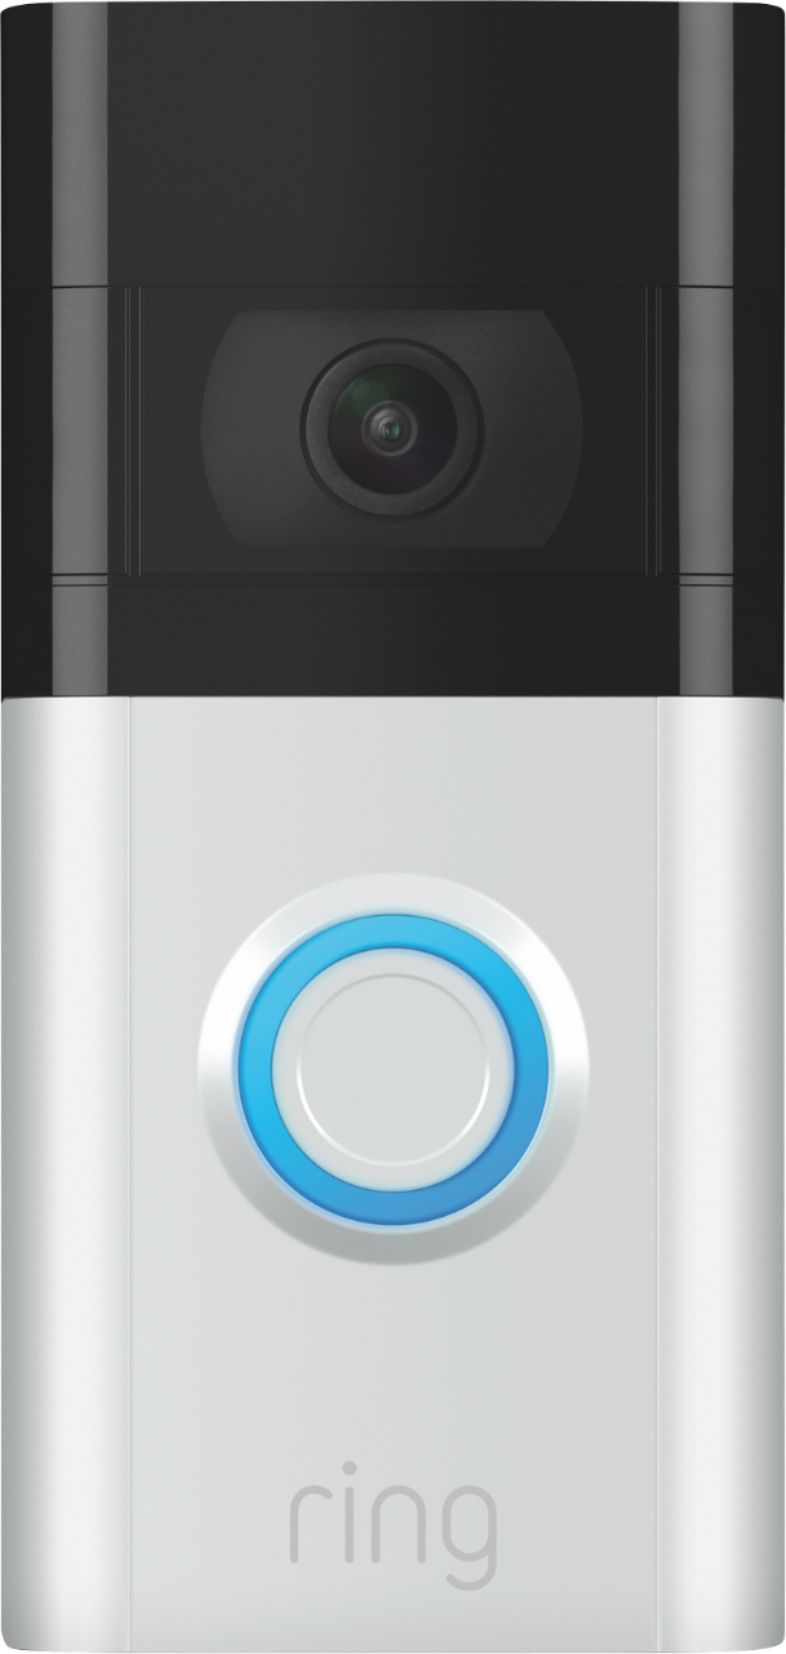 Ring 53-023188 Video Doorbell with Alexa for sale online 2nd Gen Venetian Bronze